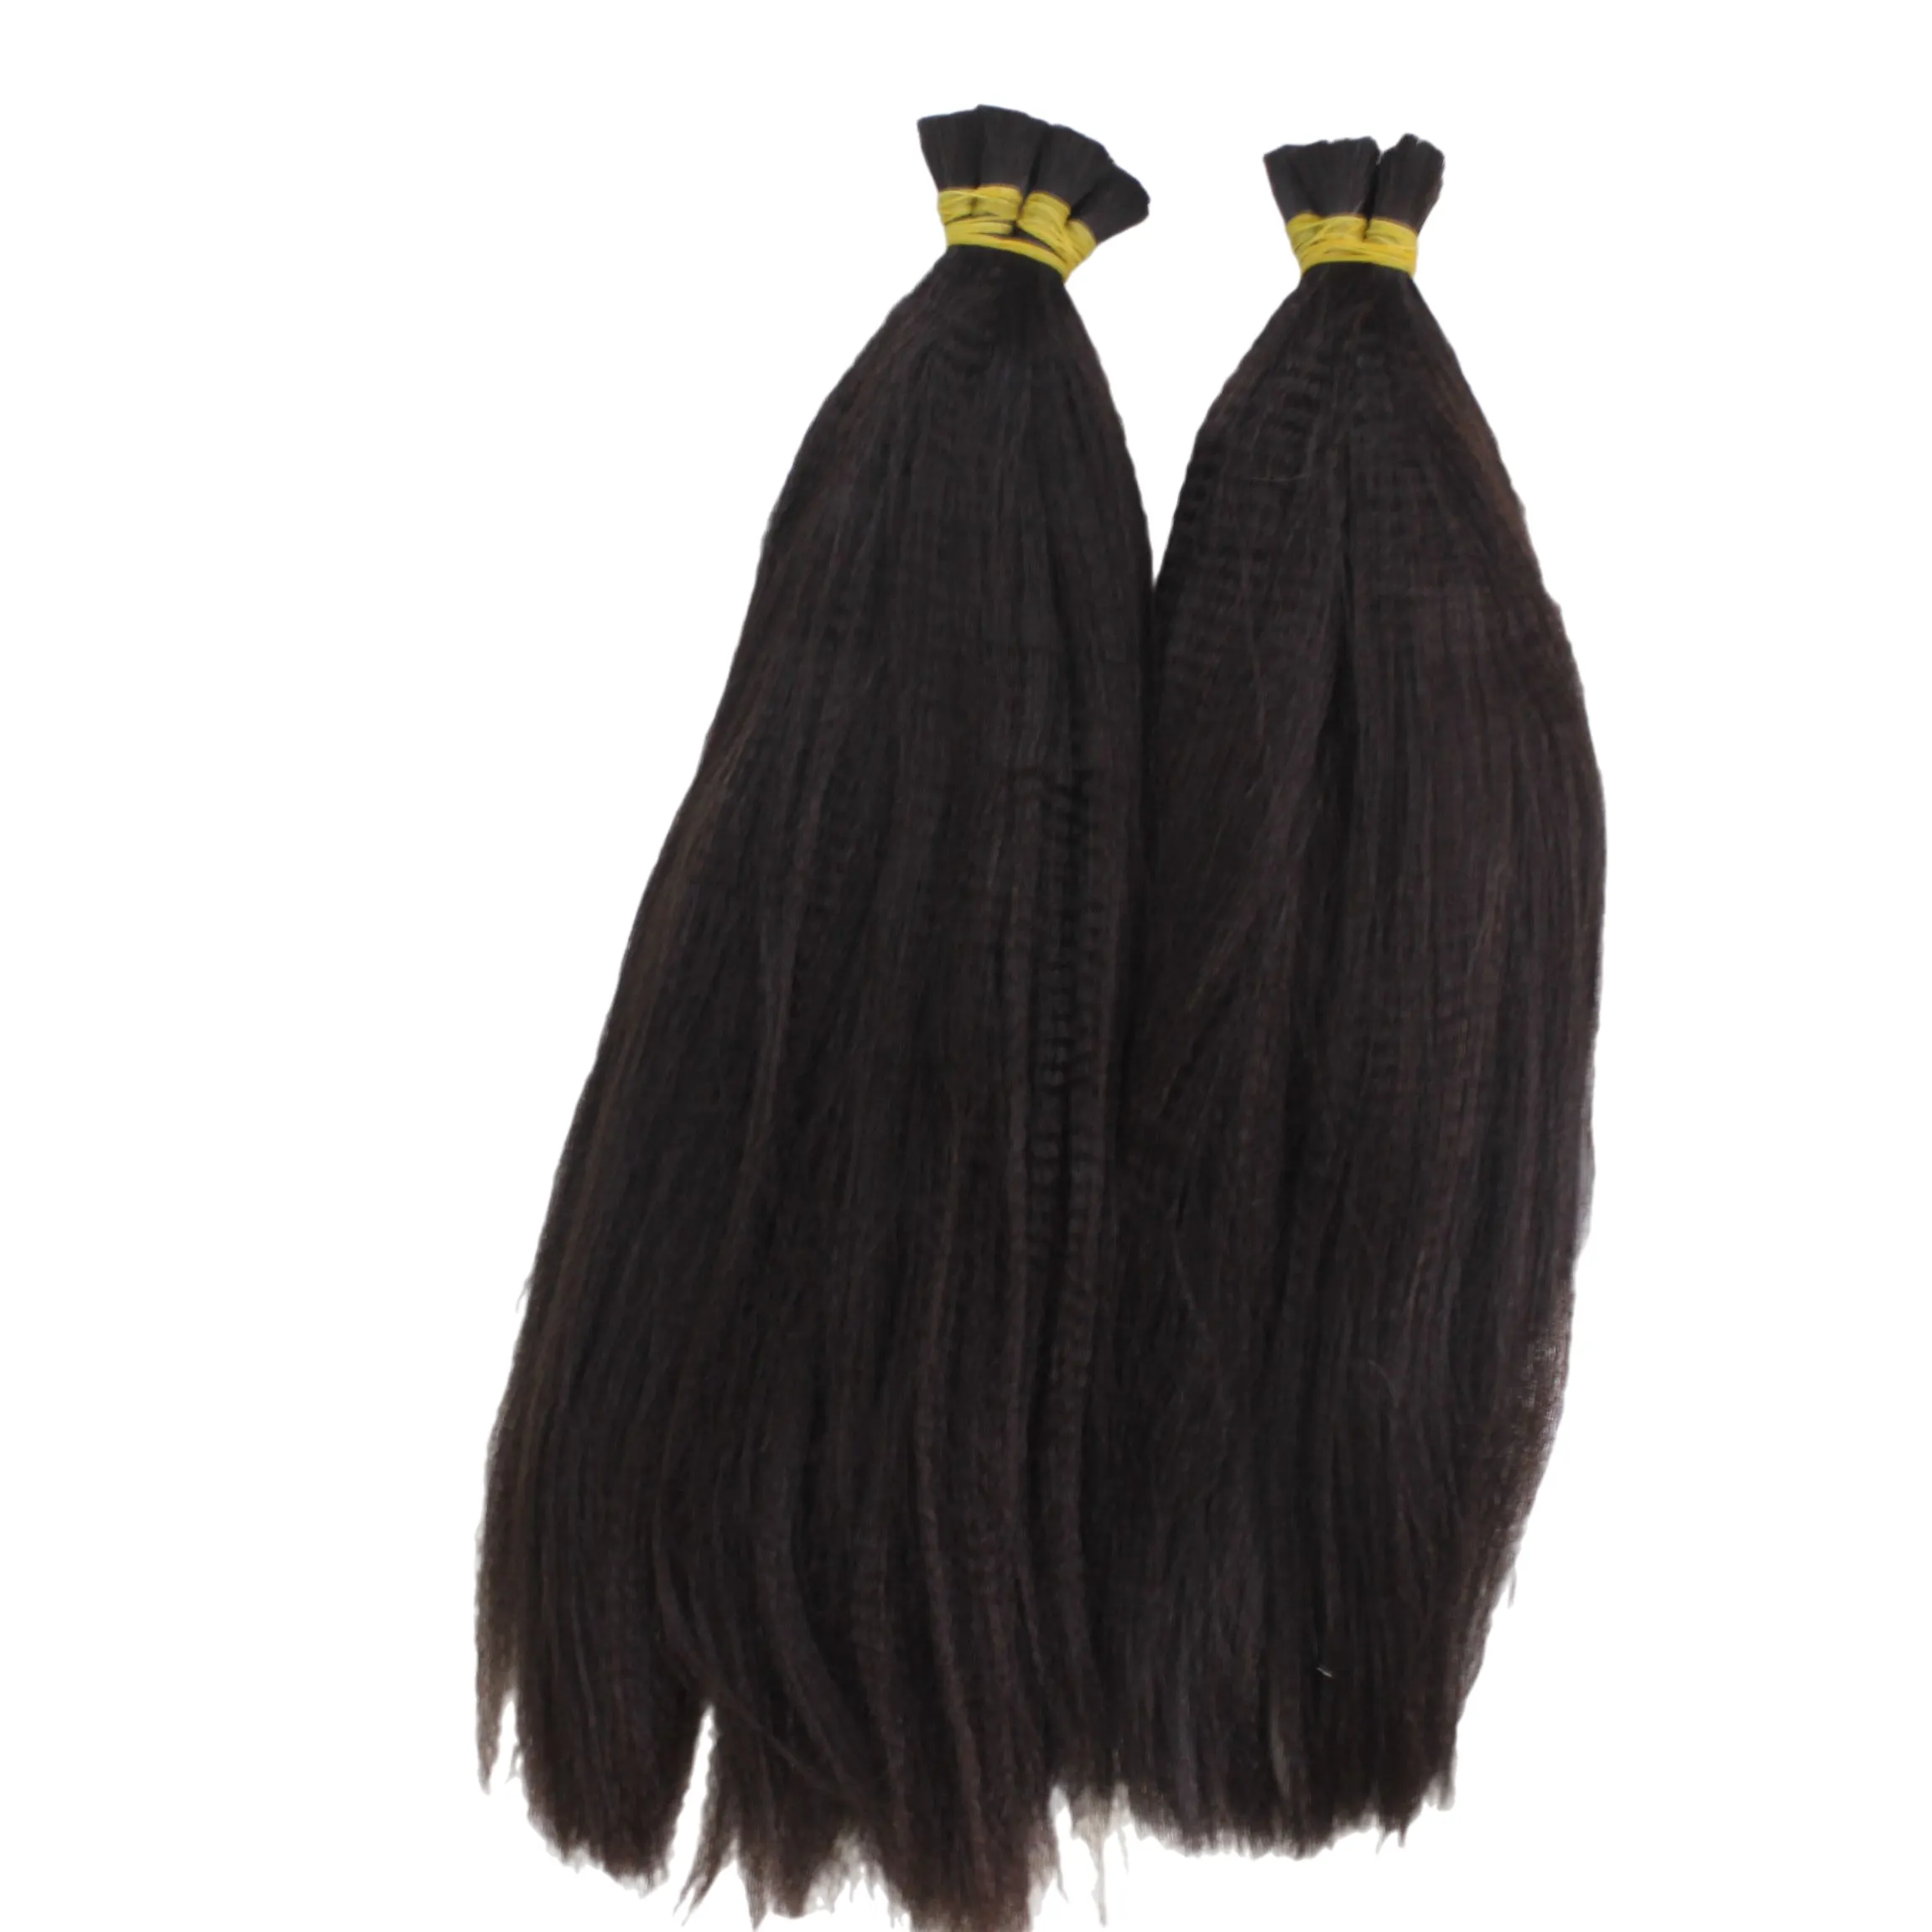 Việt nam mềm kinky thẳng phần mở rộng tóc tự nhiên sóng FUMI mùa xuân Curl Yaki phong cách 100g Trinh Nữ tóc duy nhất sợi ngang tất cả các màu sắc